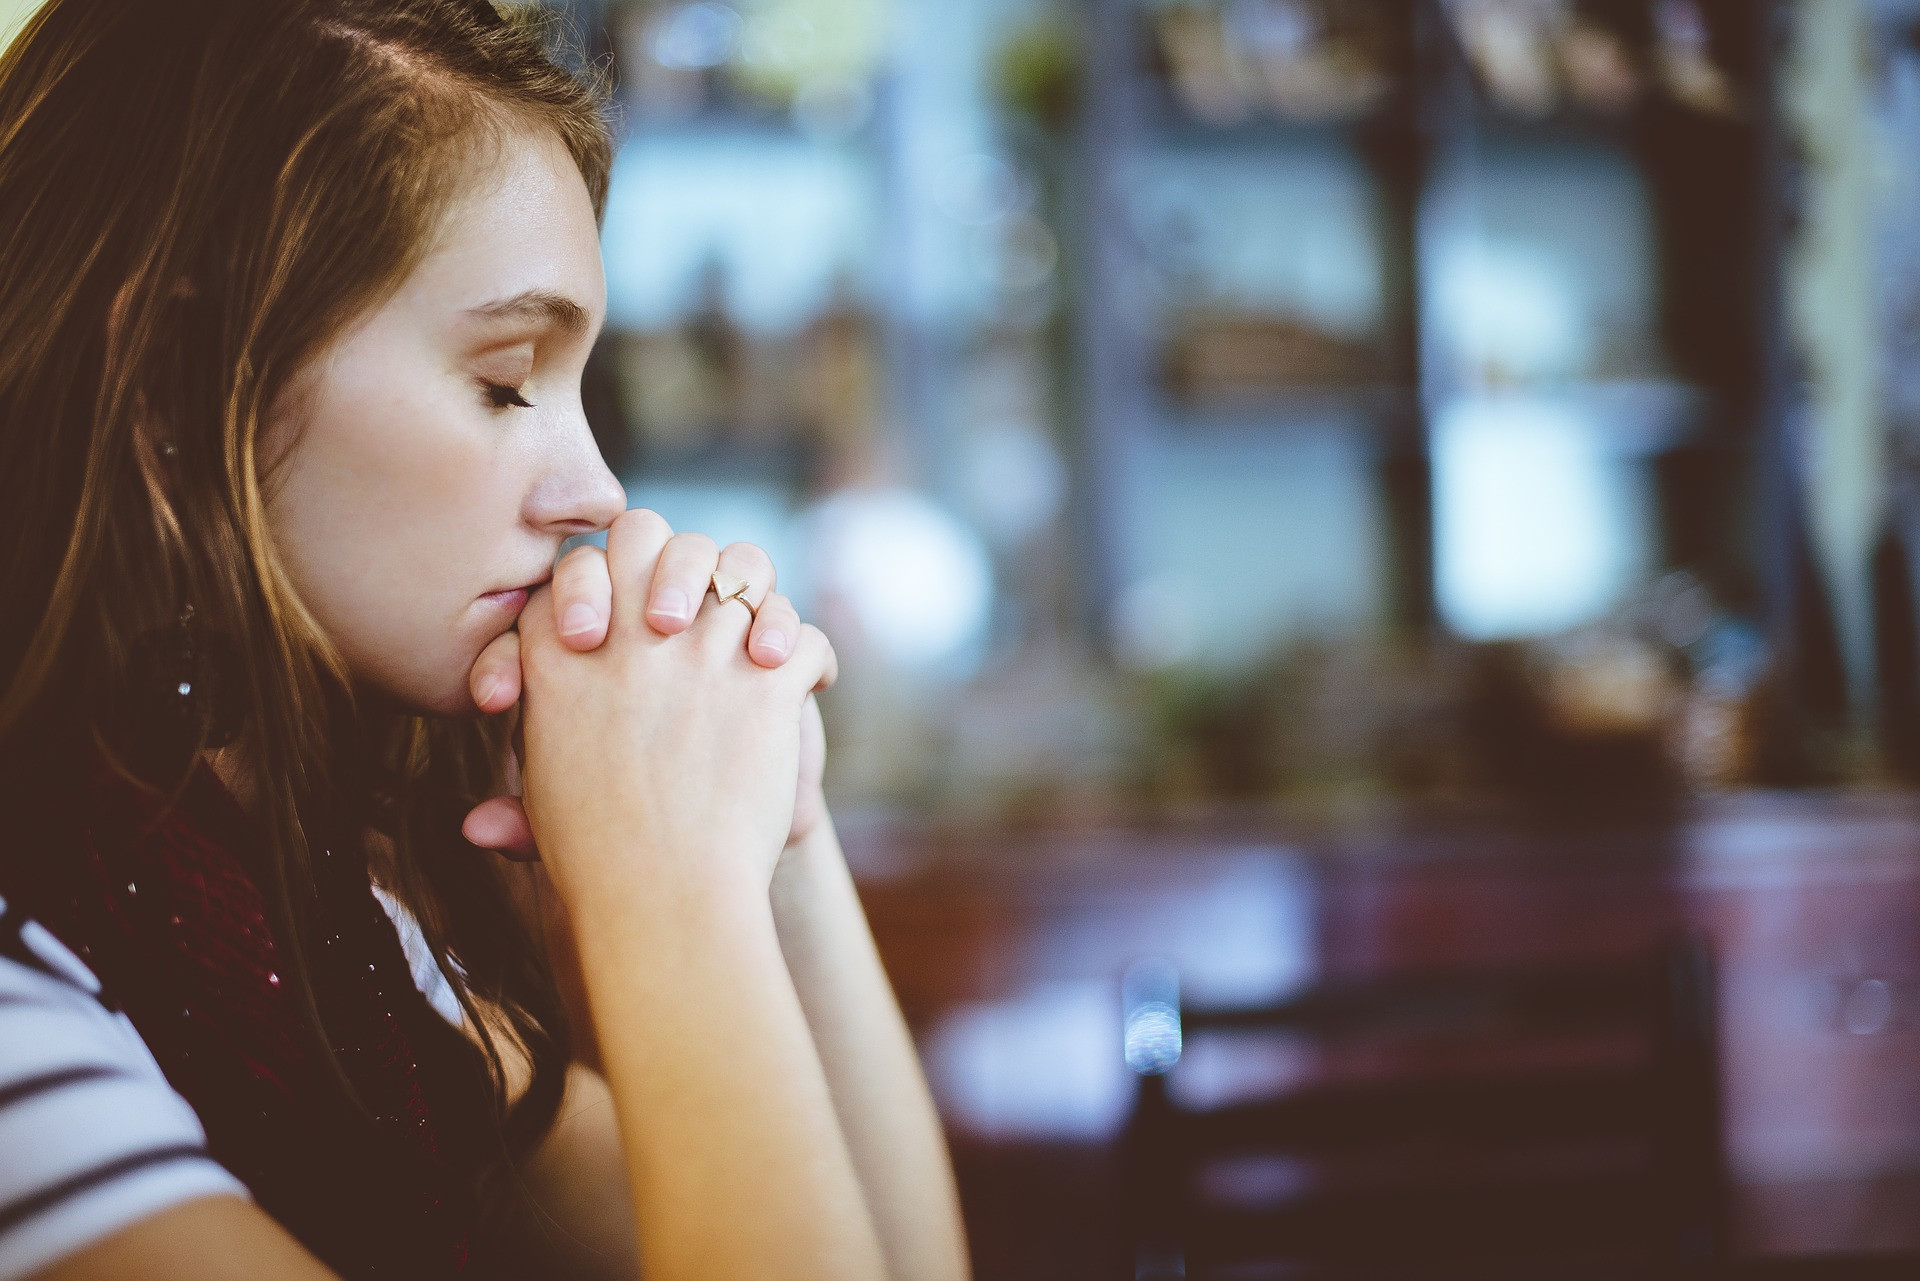 Żal za grzechy — modlitwa i warunki odpuszczenia grzechów